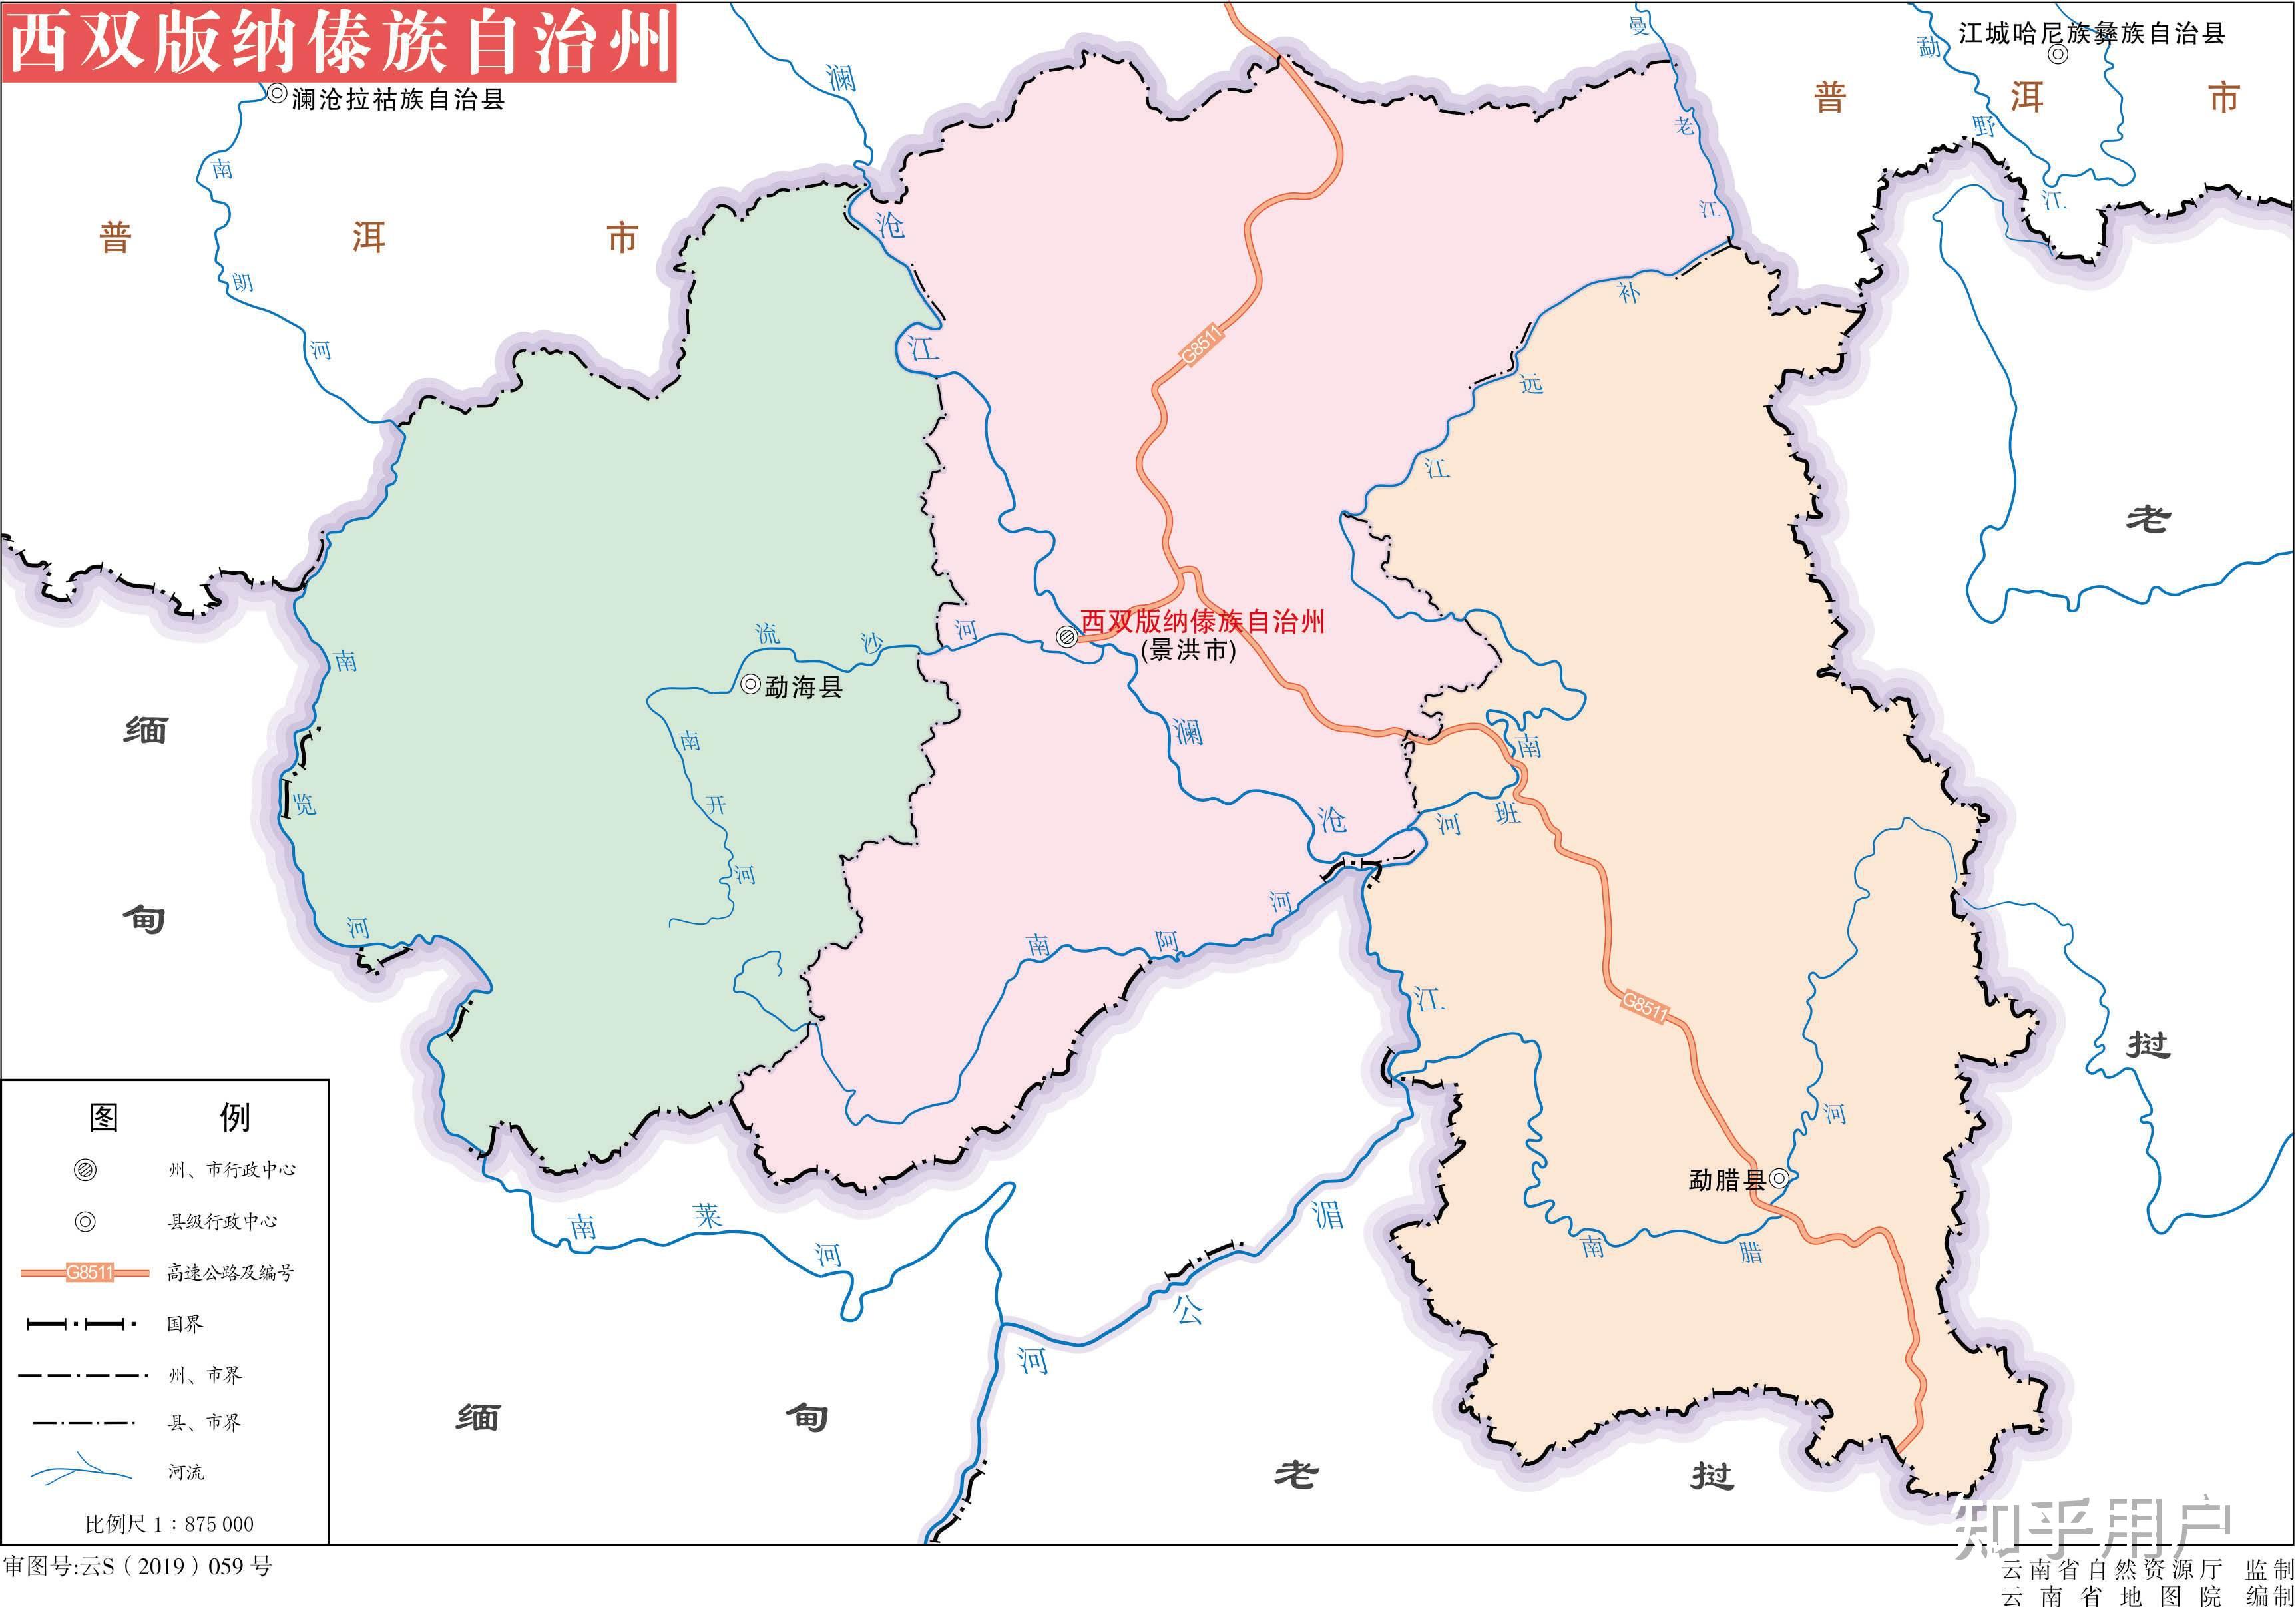 为什么伊洛瓦底江和萨尔温江在汉语里被称为江? 